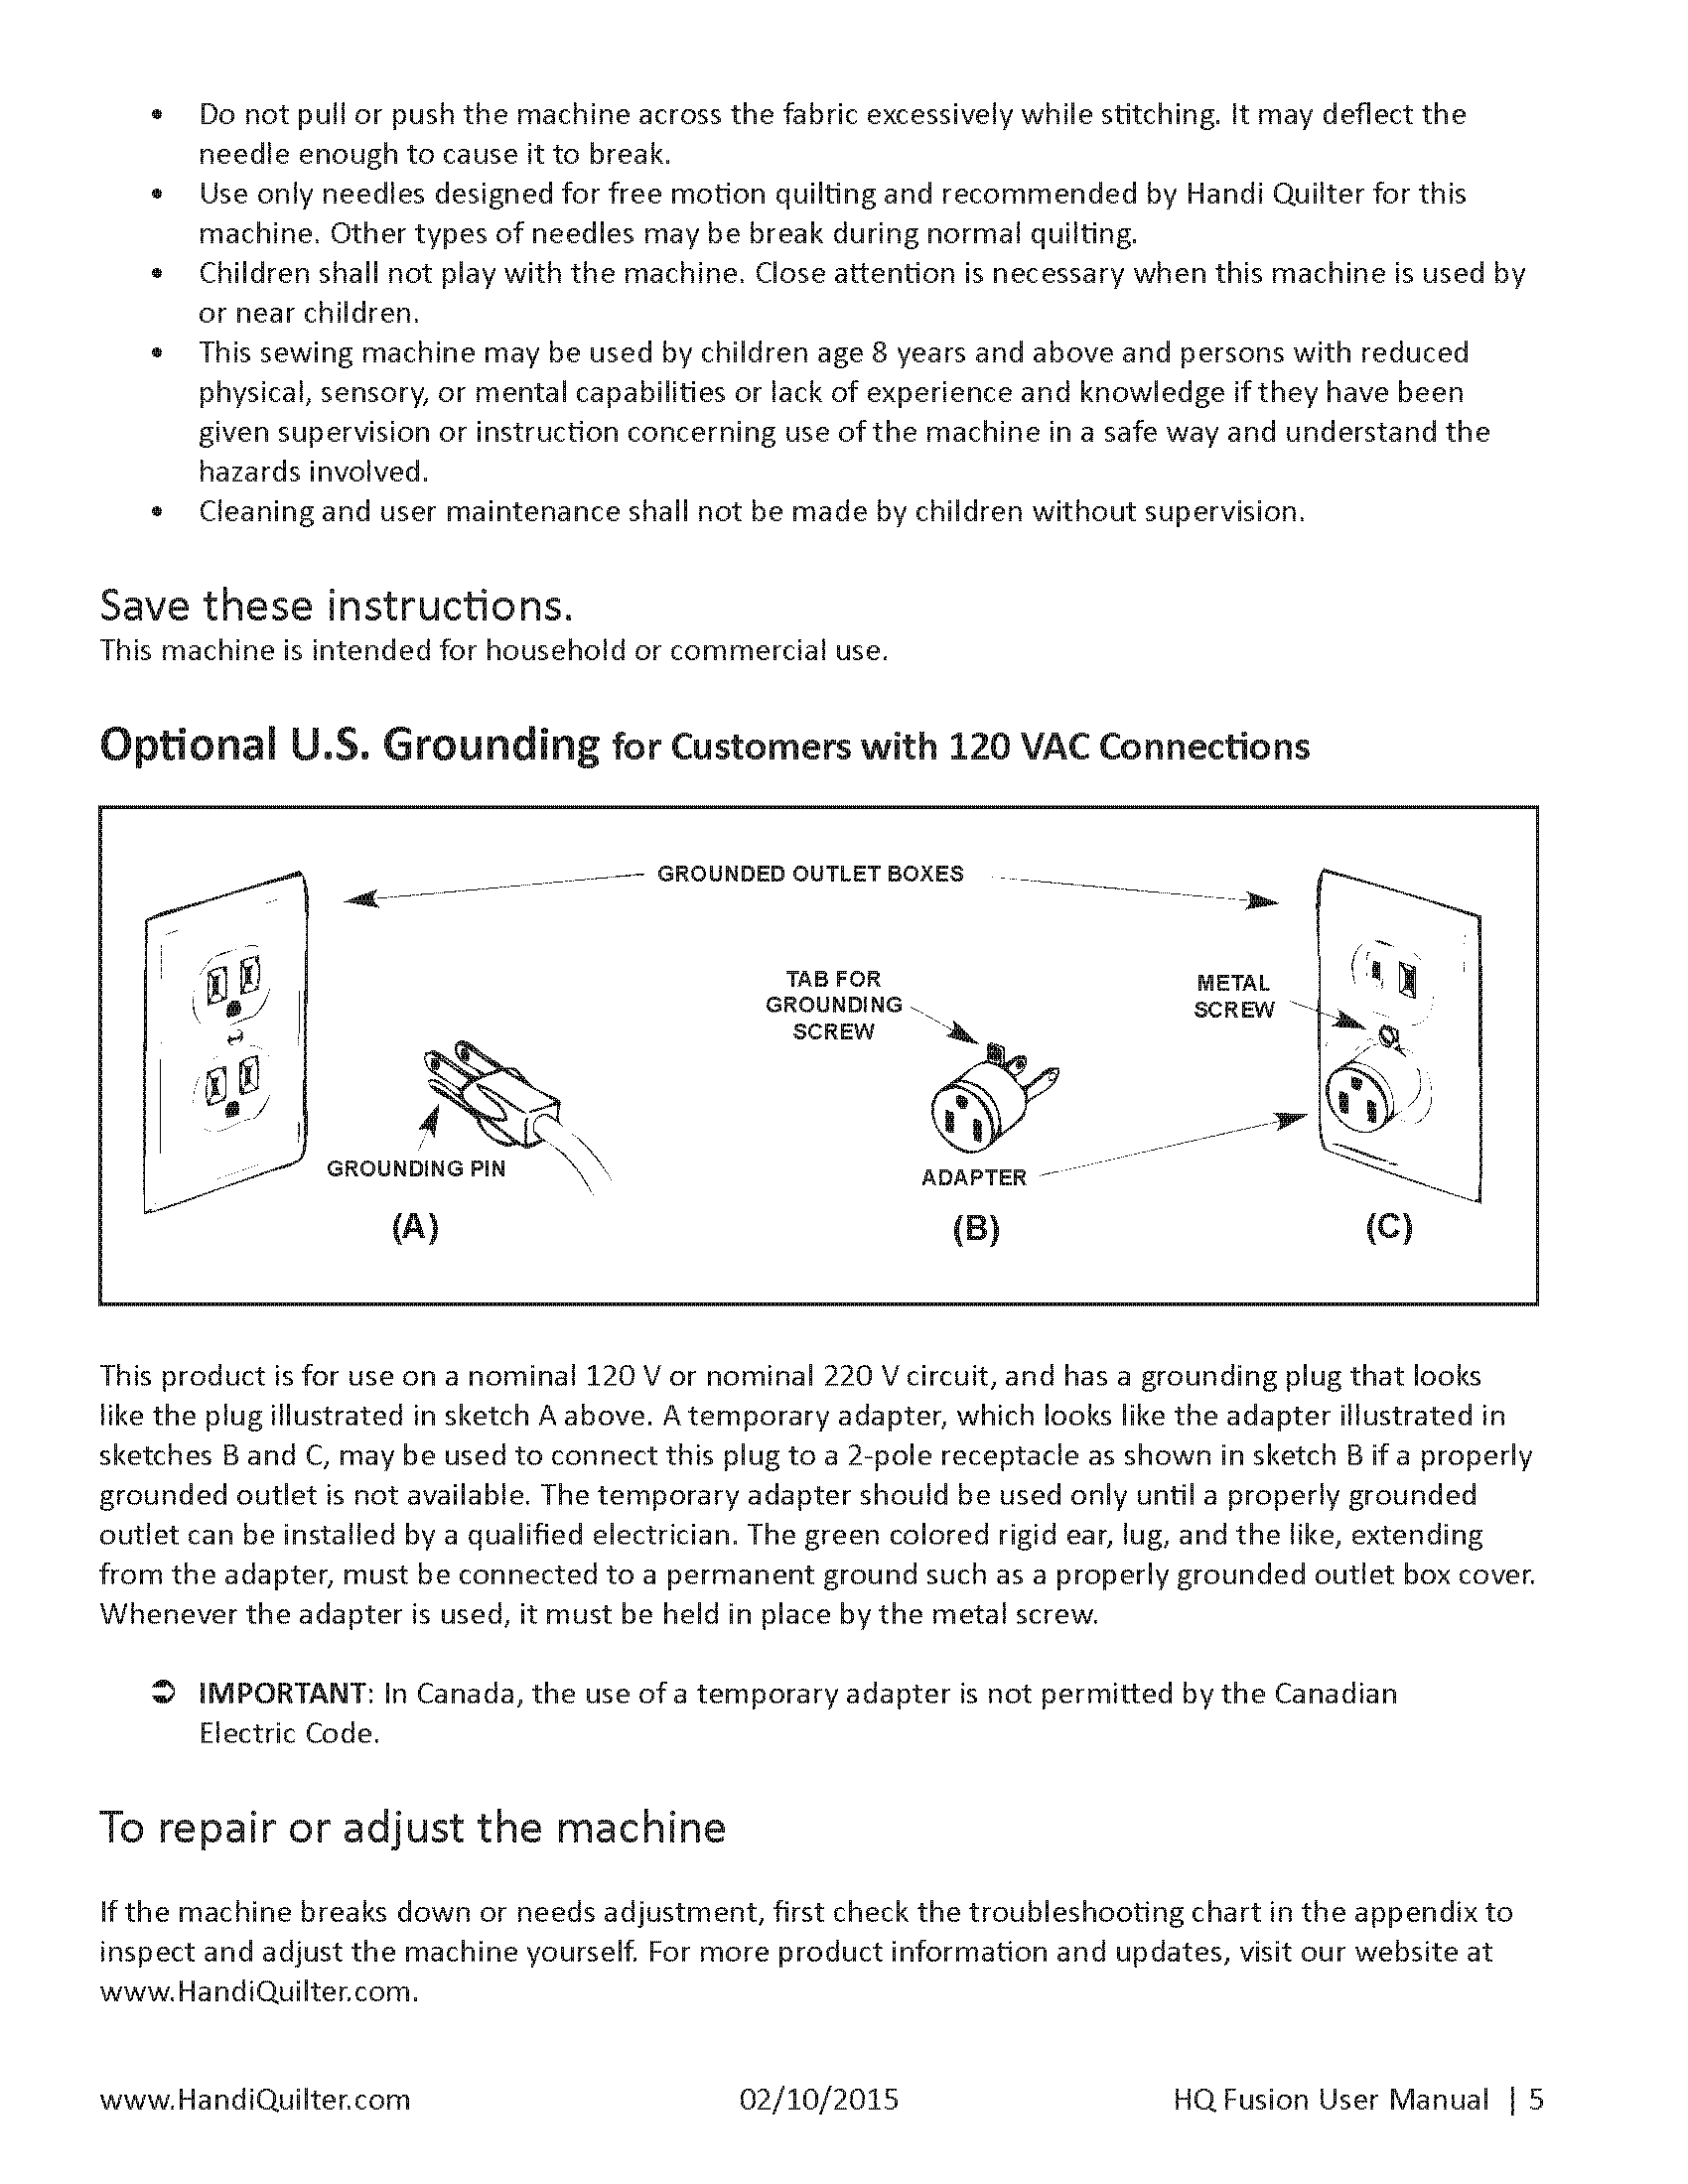 Fusion-manual-v3.1_Page_05.png